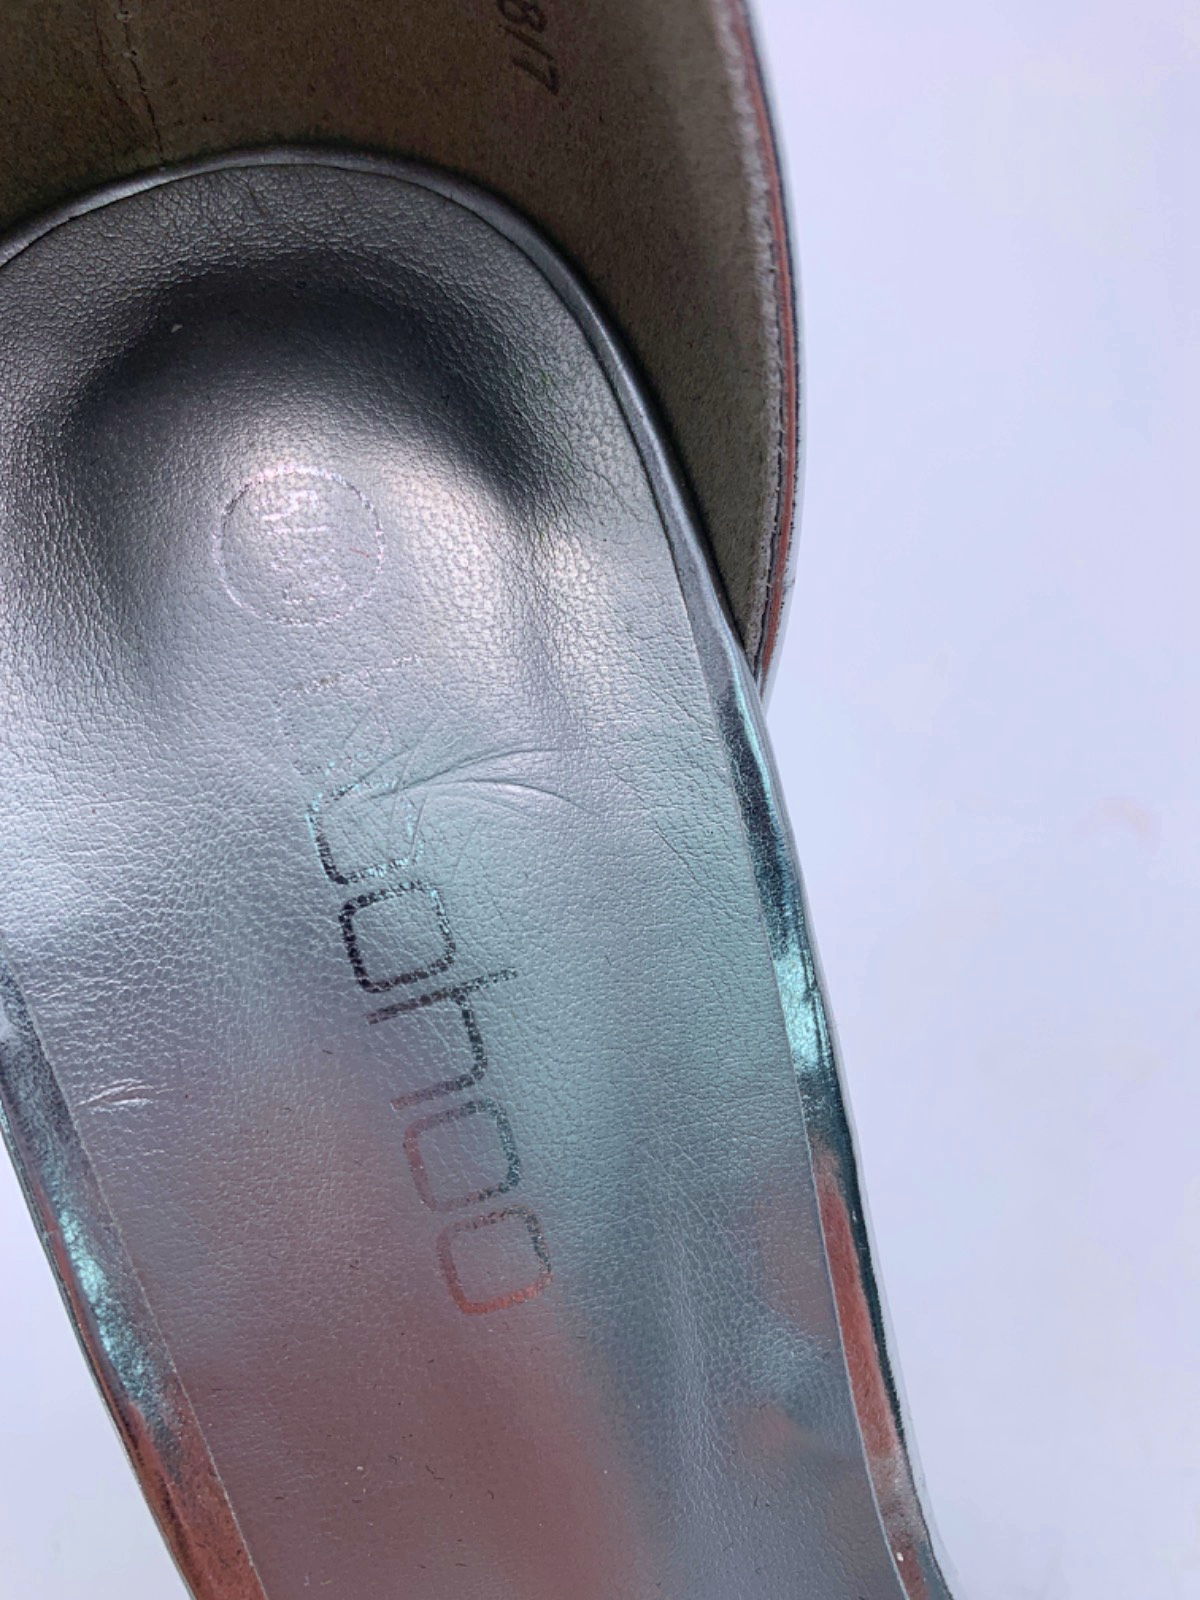 Boohoo Silver Metallic Block Heel Sandals 6.5